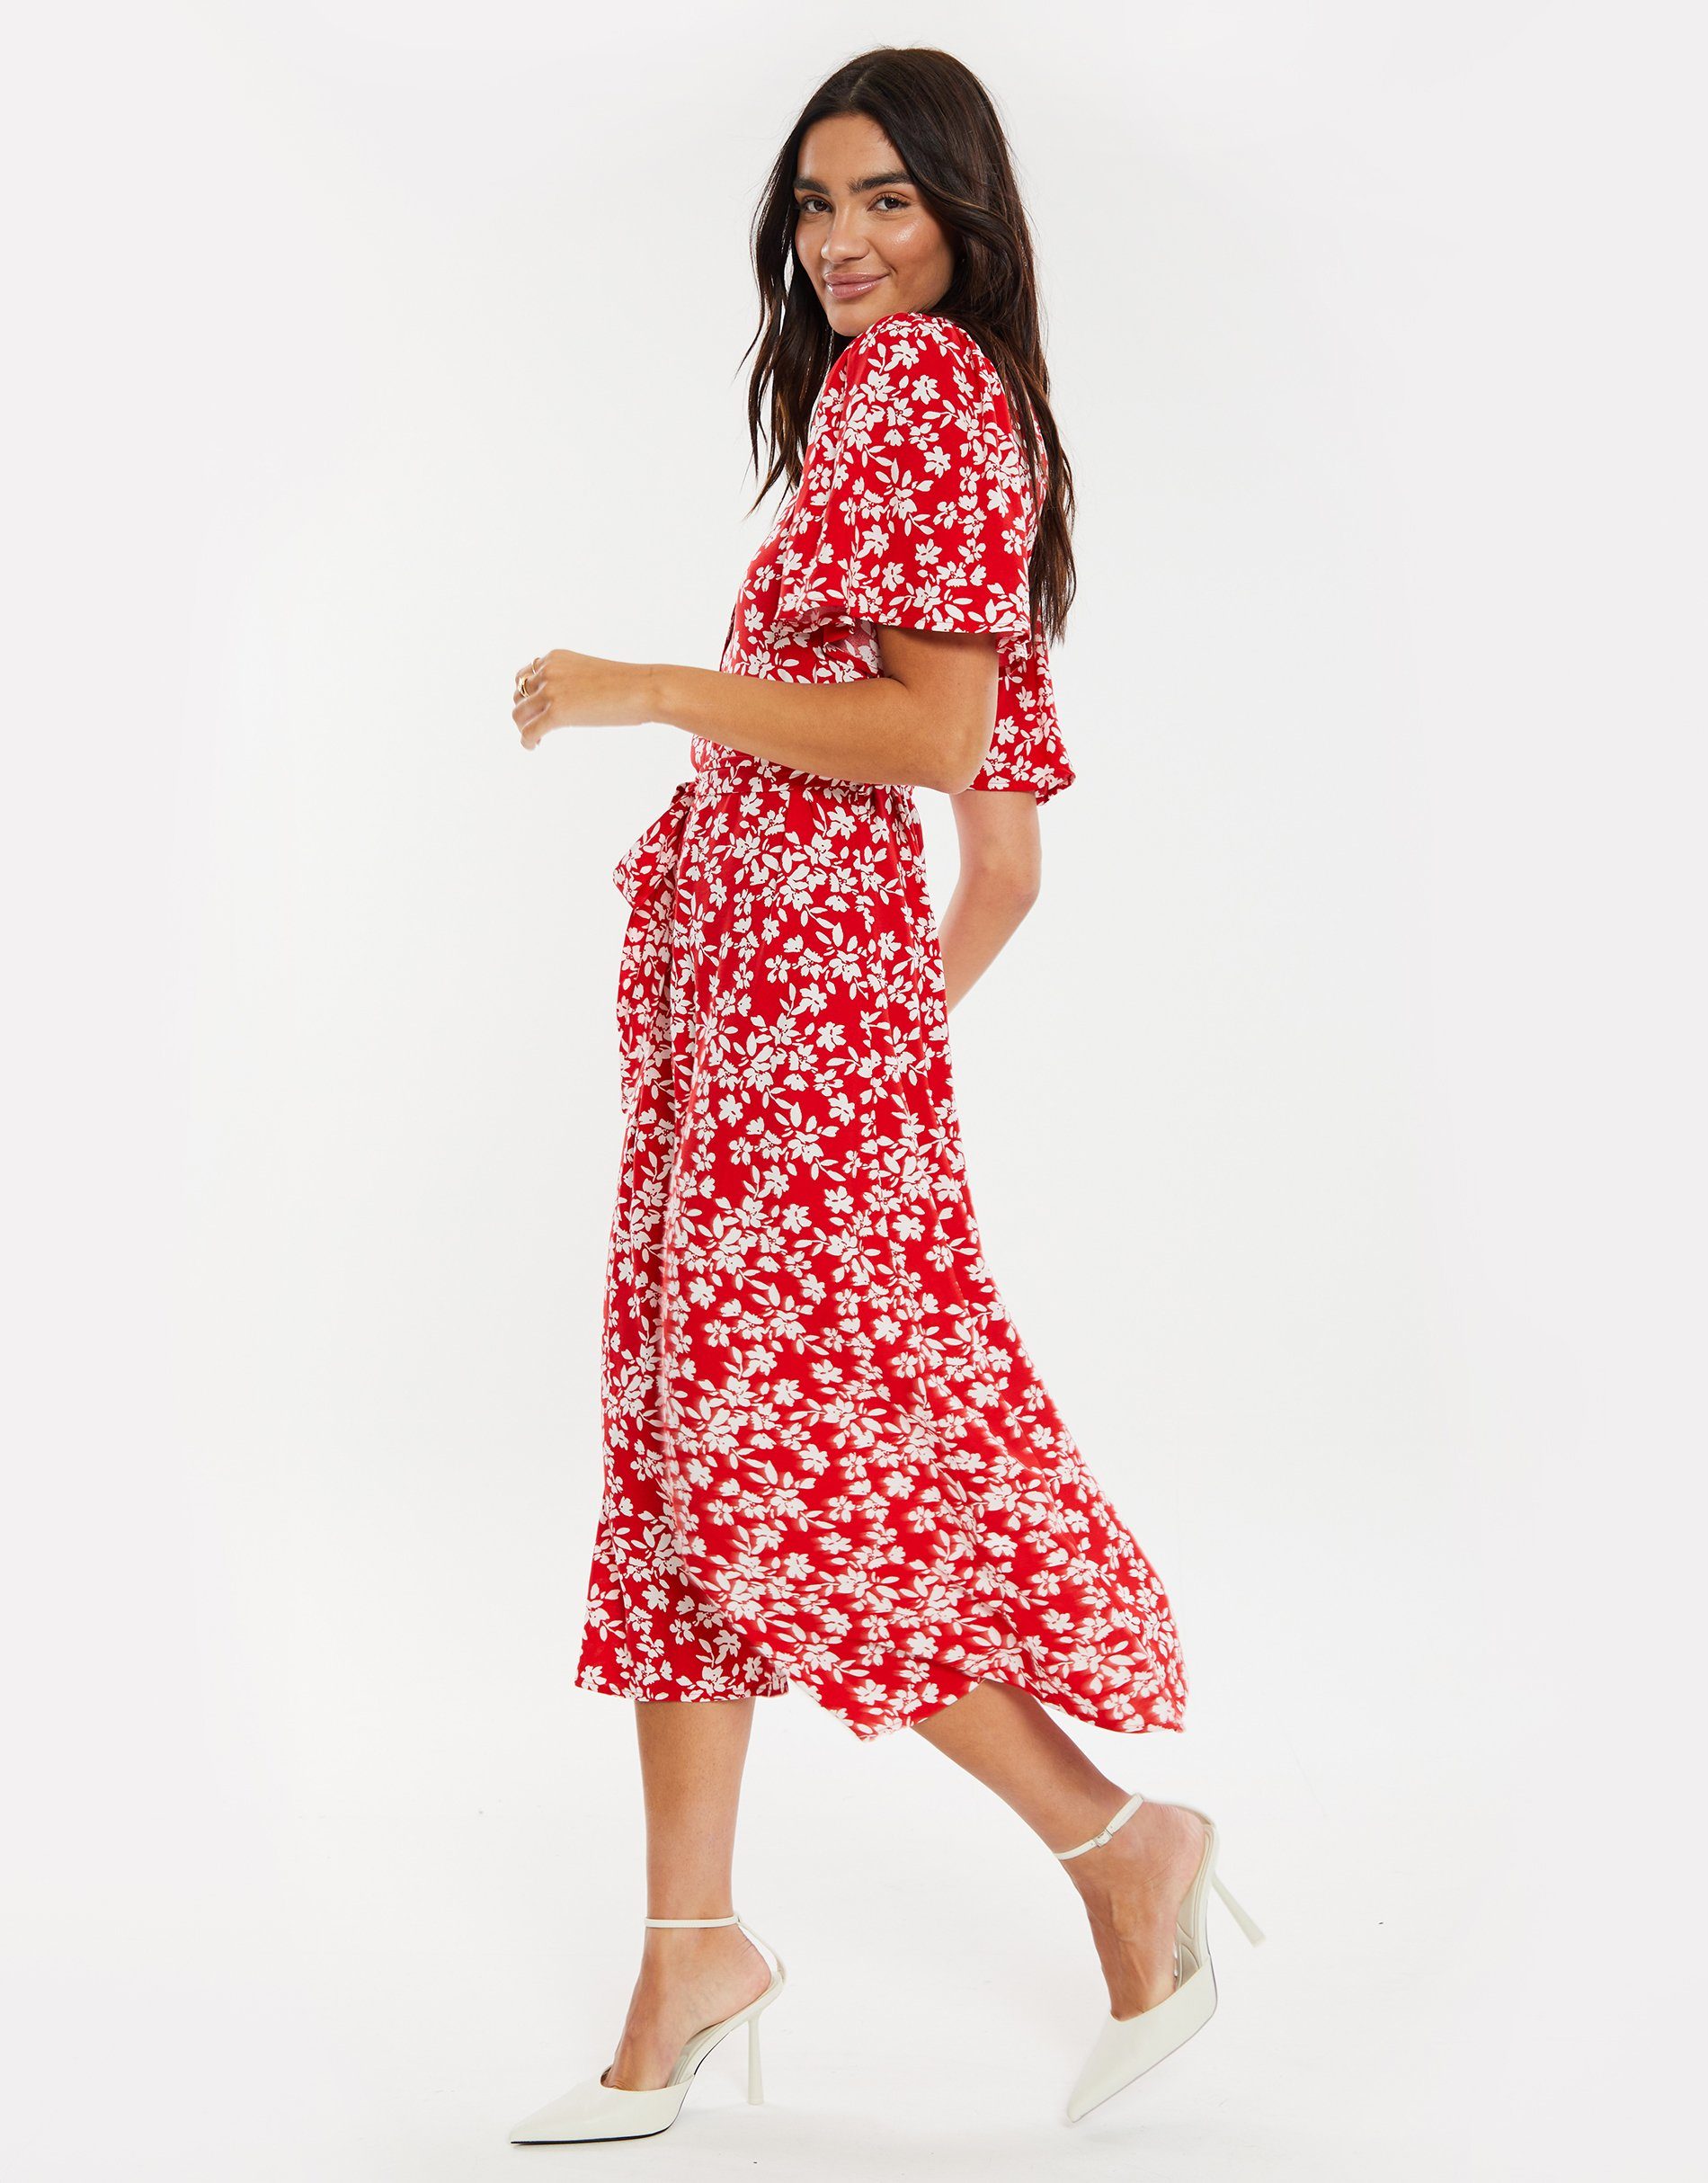 Pastill Sommerkleid Button Red Threadbare Spot - Dress rot Midi Fruit THB gepunktet